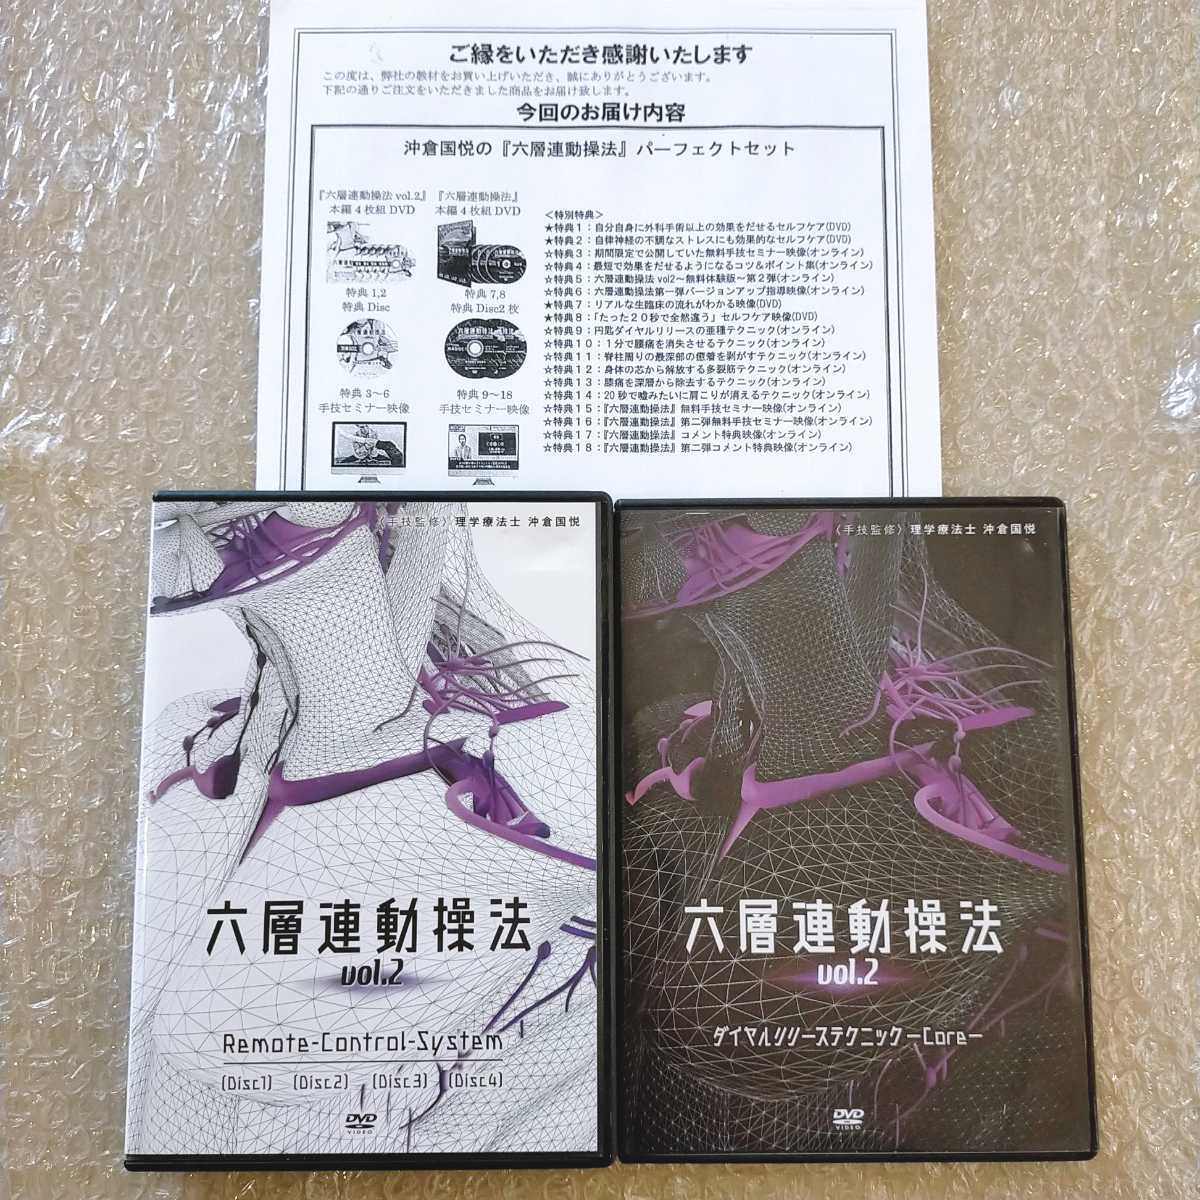 六層連動操法 vol.2 理学療法士 沖倉国悦 DVDセット-